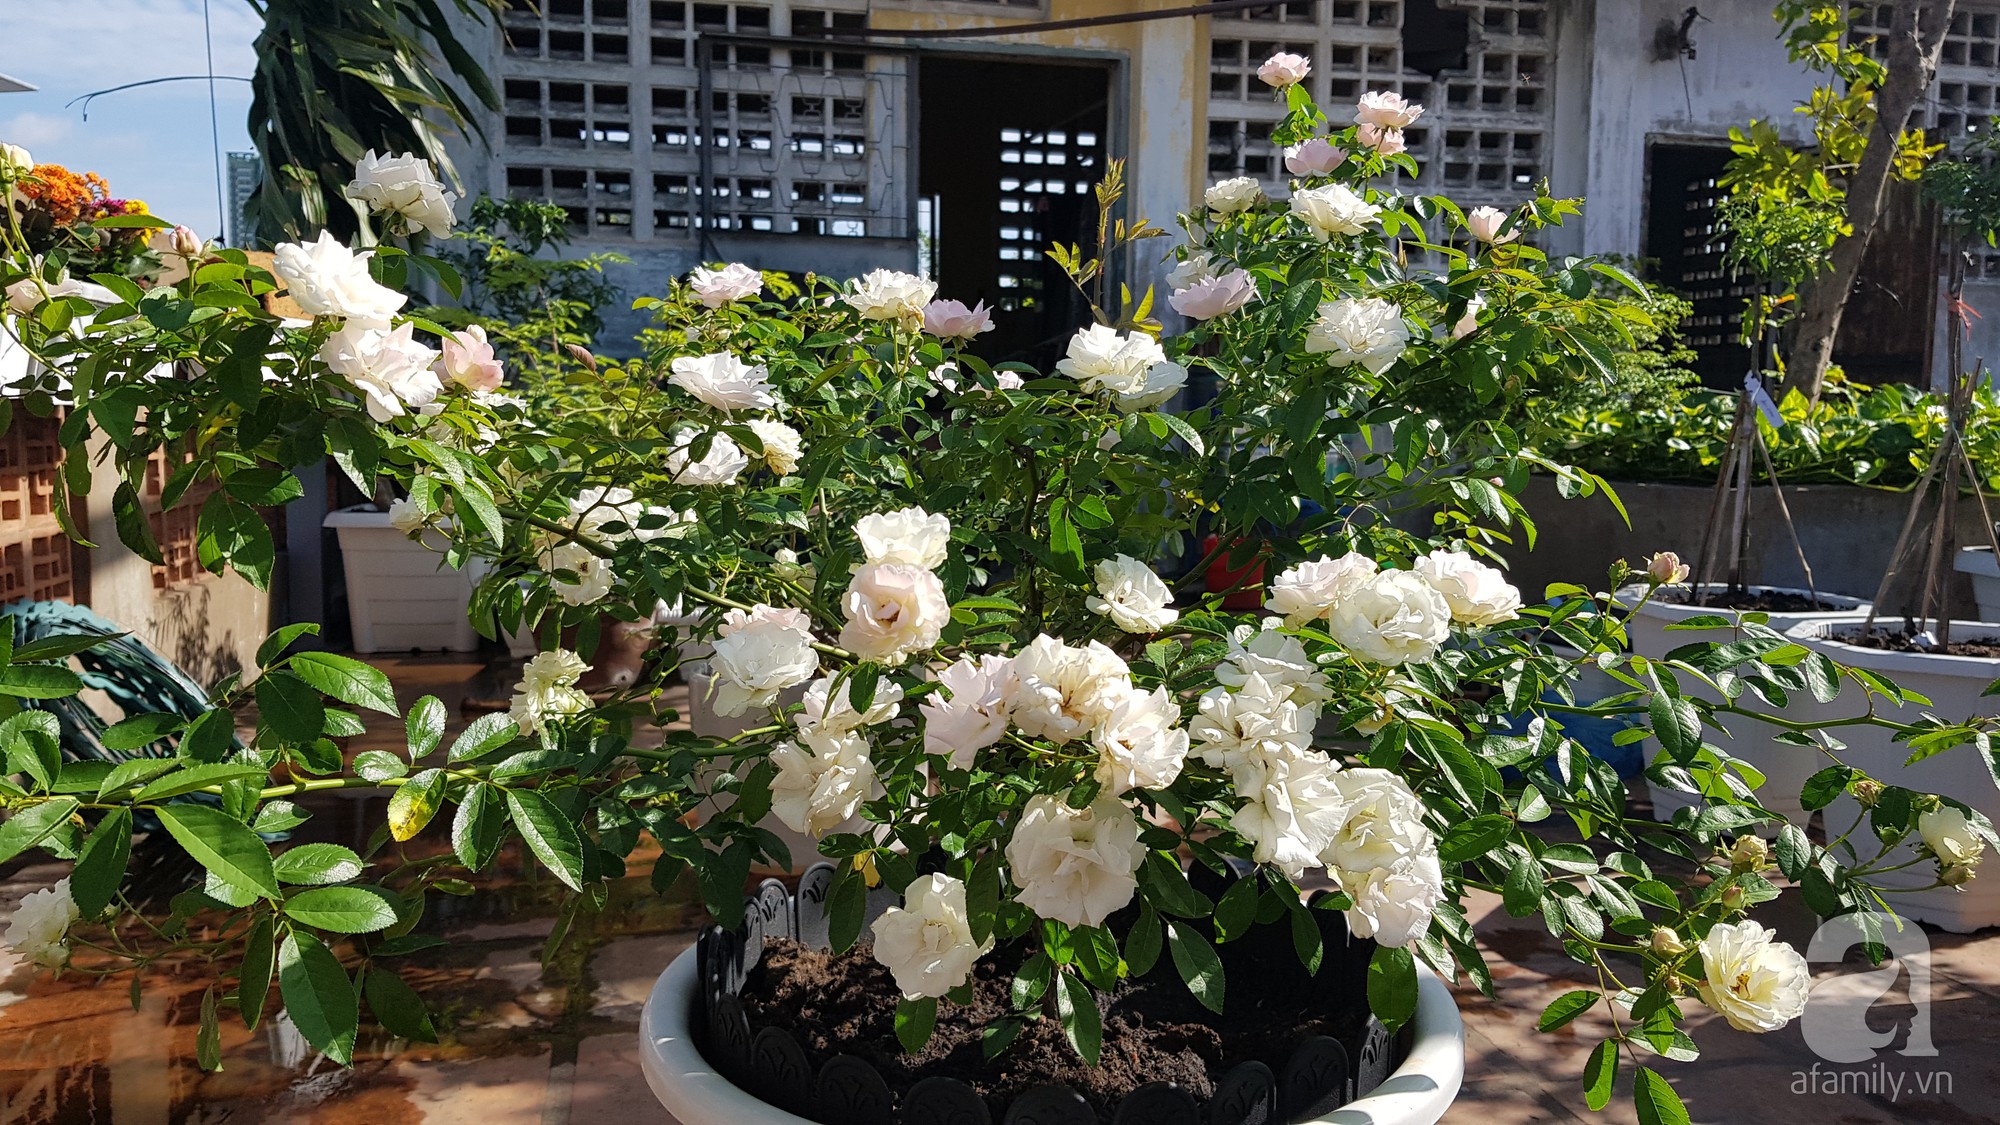 Vườn hồng trên sân thượng rực rỡ sắc màu của chàng trai 8x siêu đảm ở Sài Gòn - Ảnh 1.